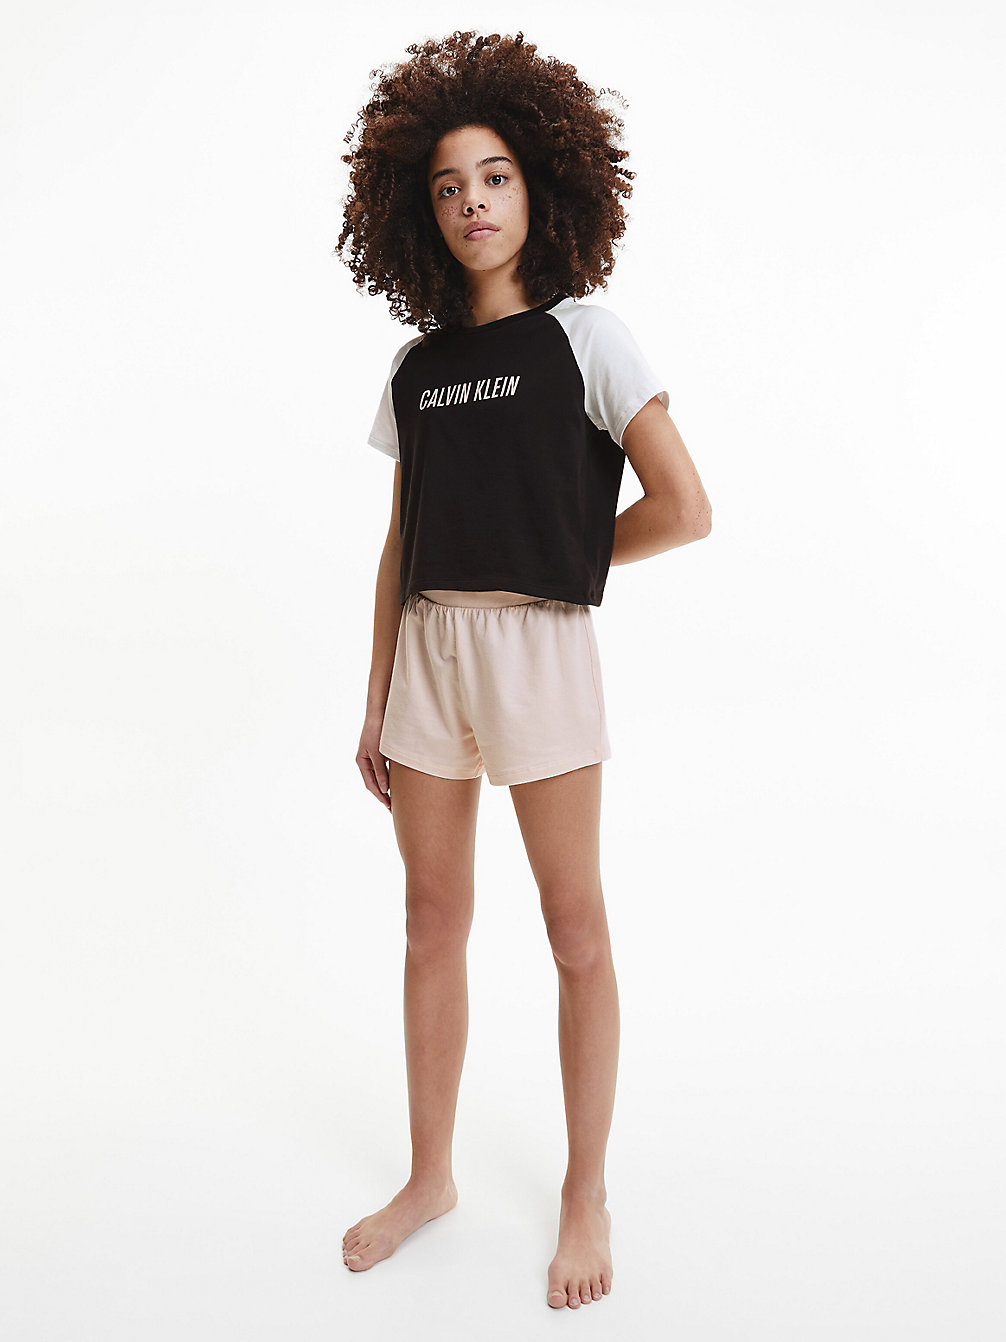 PRETTYPEACH/W/PVHBLACK Shorts Pyjama Set - Intense Power undefined girls Calvin Klein